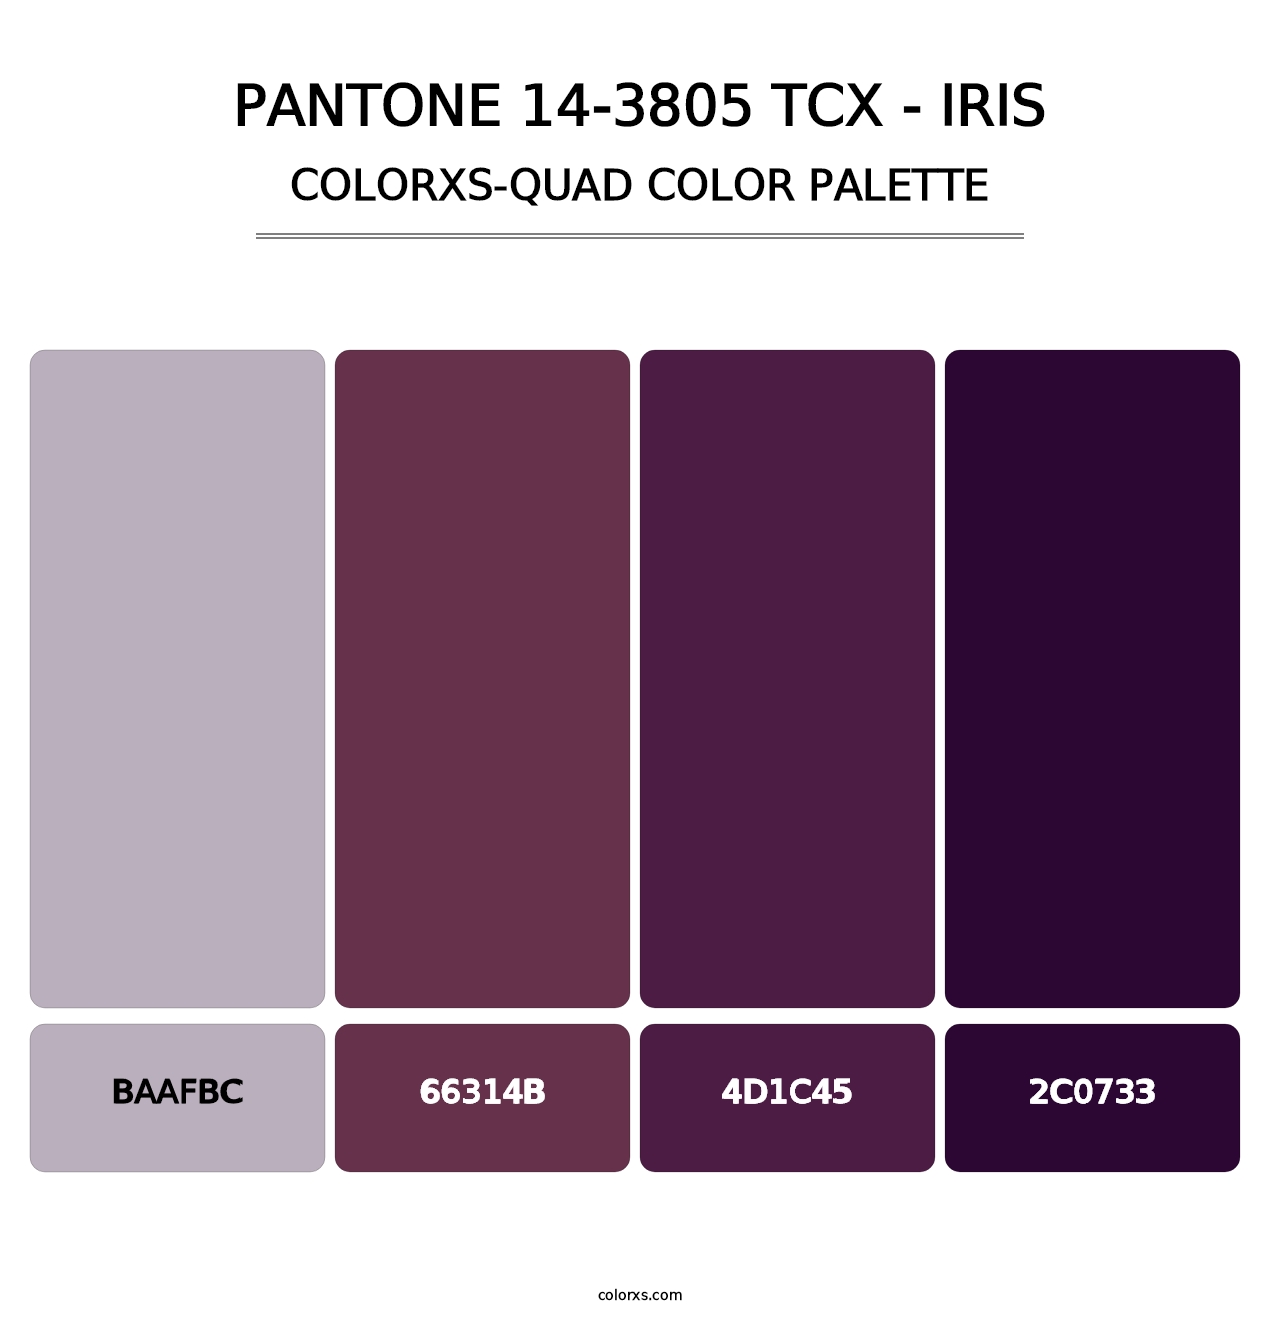 PANTONE 14-3805 TCX - Iris - Colorxs Quad Palette